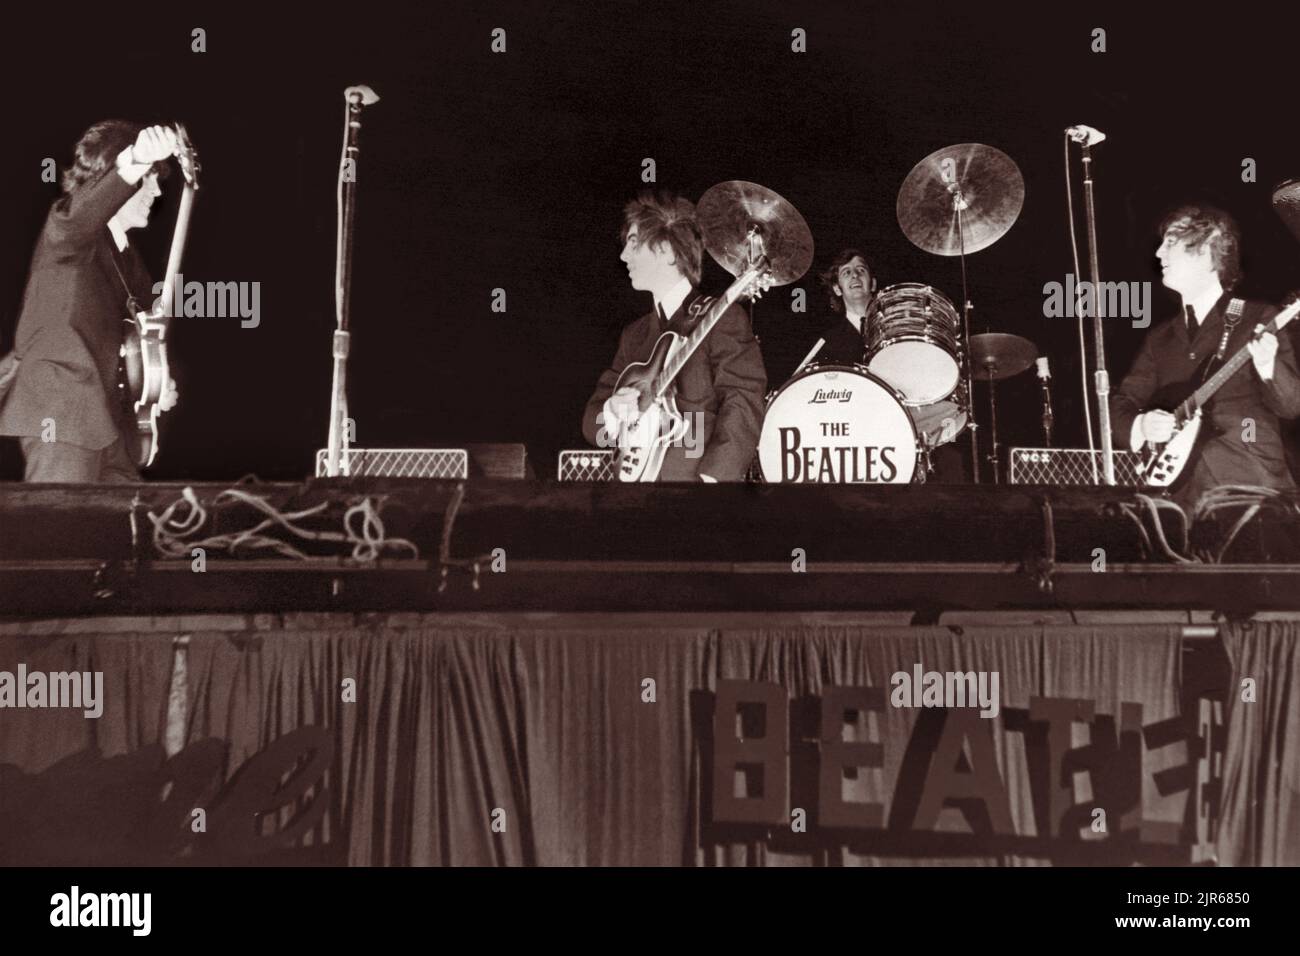 The Beatles en el escenario del Gator Bowl en Jacksonville, Florida, el 11 de septiembre de 1964. El huracán Dora había golpeado Jacksonville el día anterior y los vientos fuertes restantes, racheado a 45 mph, requirió que los tambores de Ringo Starr fueran clavados en el escenario y causó que la inscripción de cartón 'Beatles' en el lado del escenario finalmente fuera arrancada. (ESTADOS UNIDOS) Foto de stock